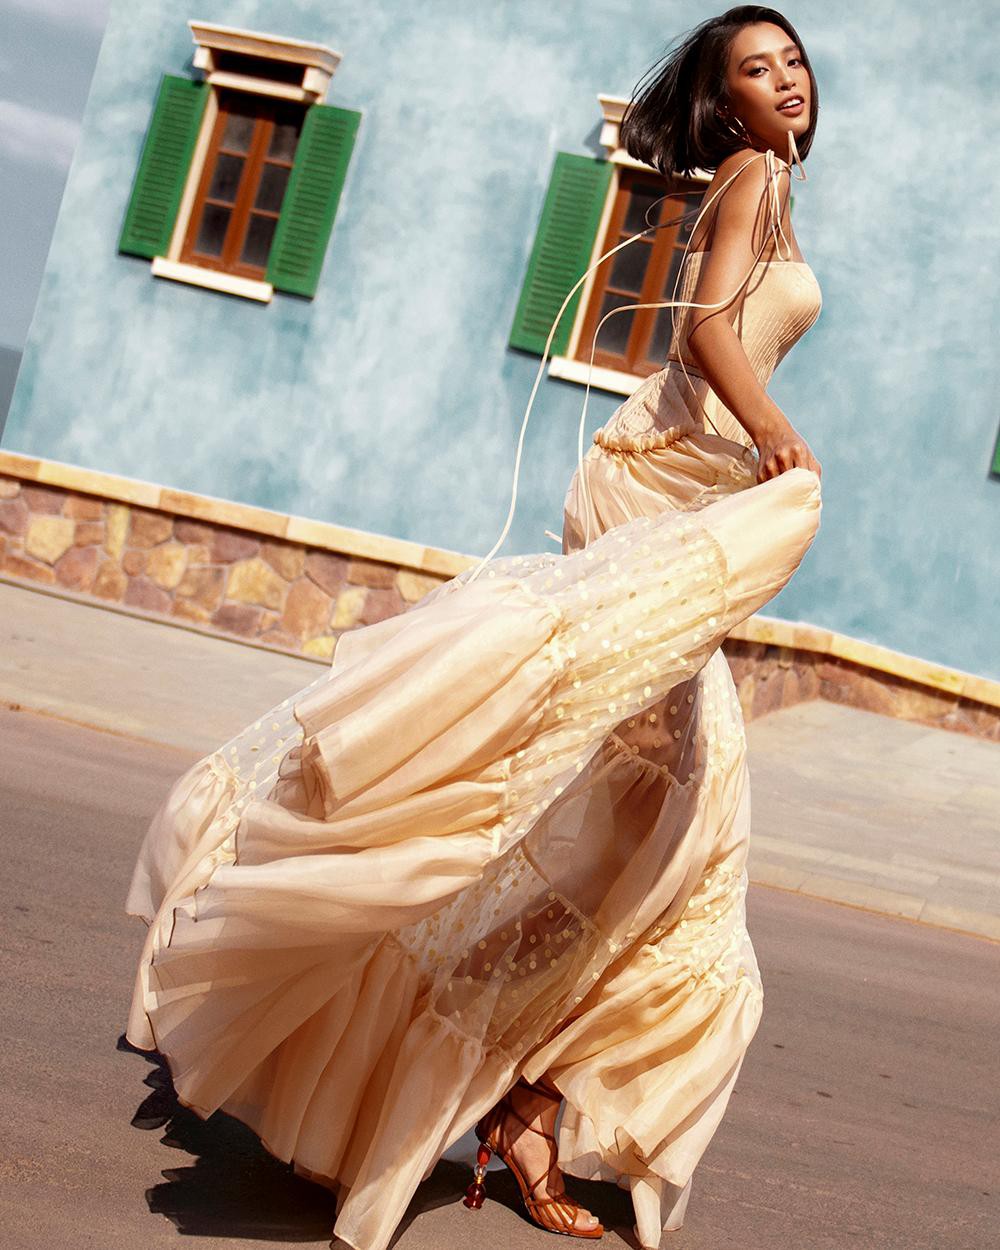 Hoa hậu tiểu vy khoe body hoàn hảo cùng làn da nâu gợi cảm trong bộ ảnh chào hè - 5